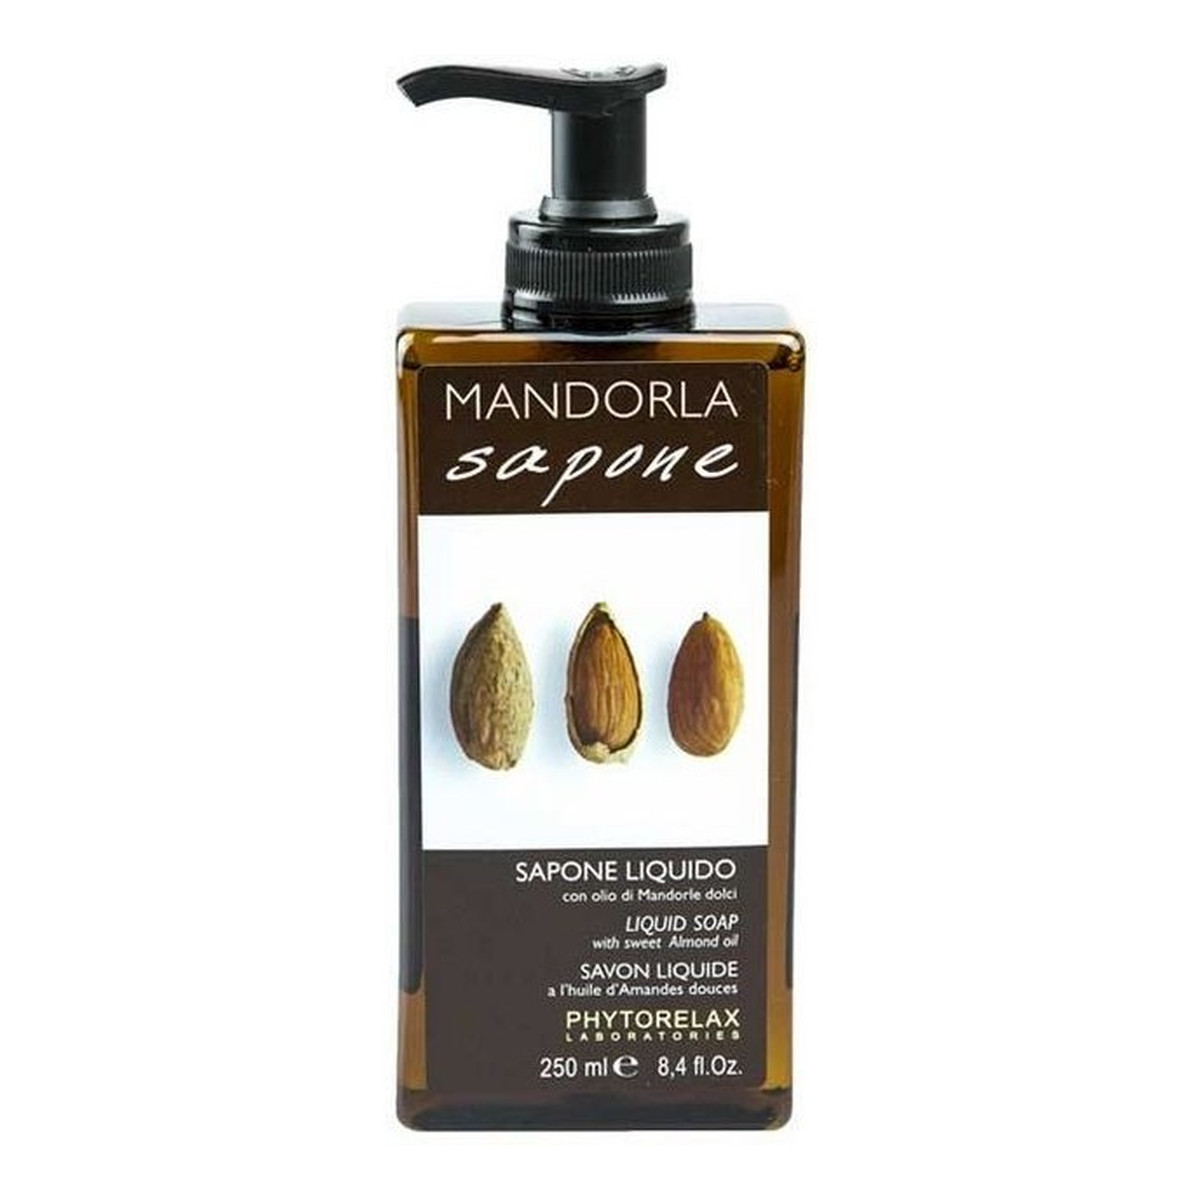 Phytorelax Mandorla Sapone delikatne mydło w płynie 250ml